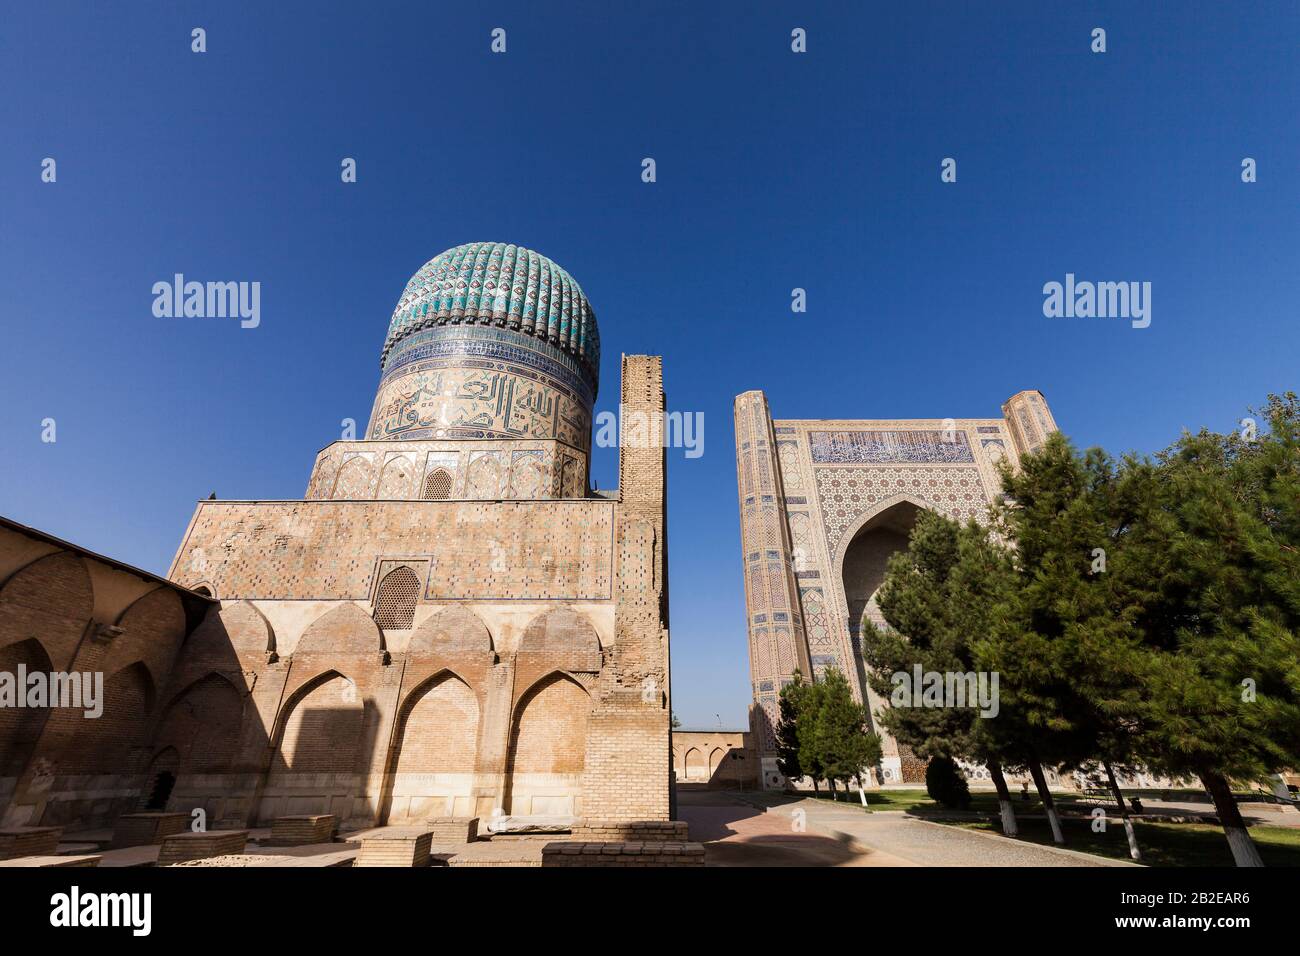 Iwan, ist ein islamischer Saal im Innenhof der Bibi Khanym-Moschee, der Bibi Khanum-Moschee, Samarkand, Usbekistan, Zentralasien und Asien Stockfoto